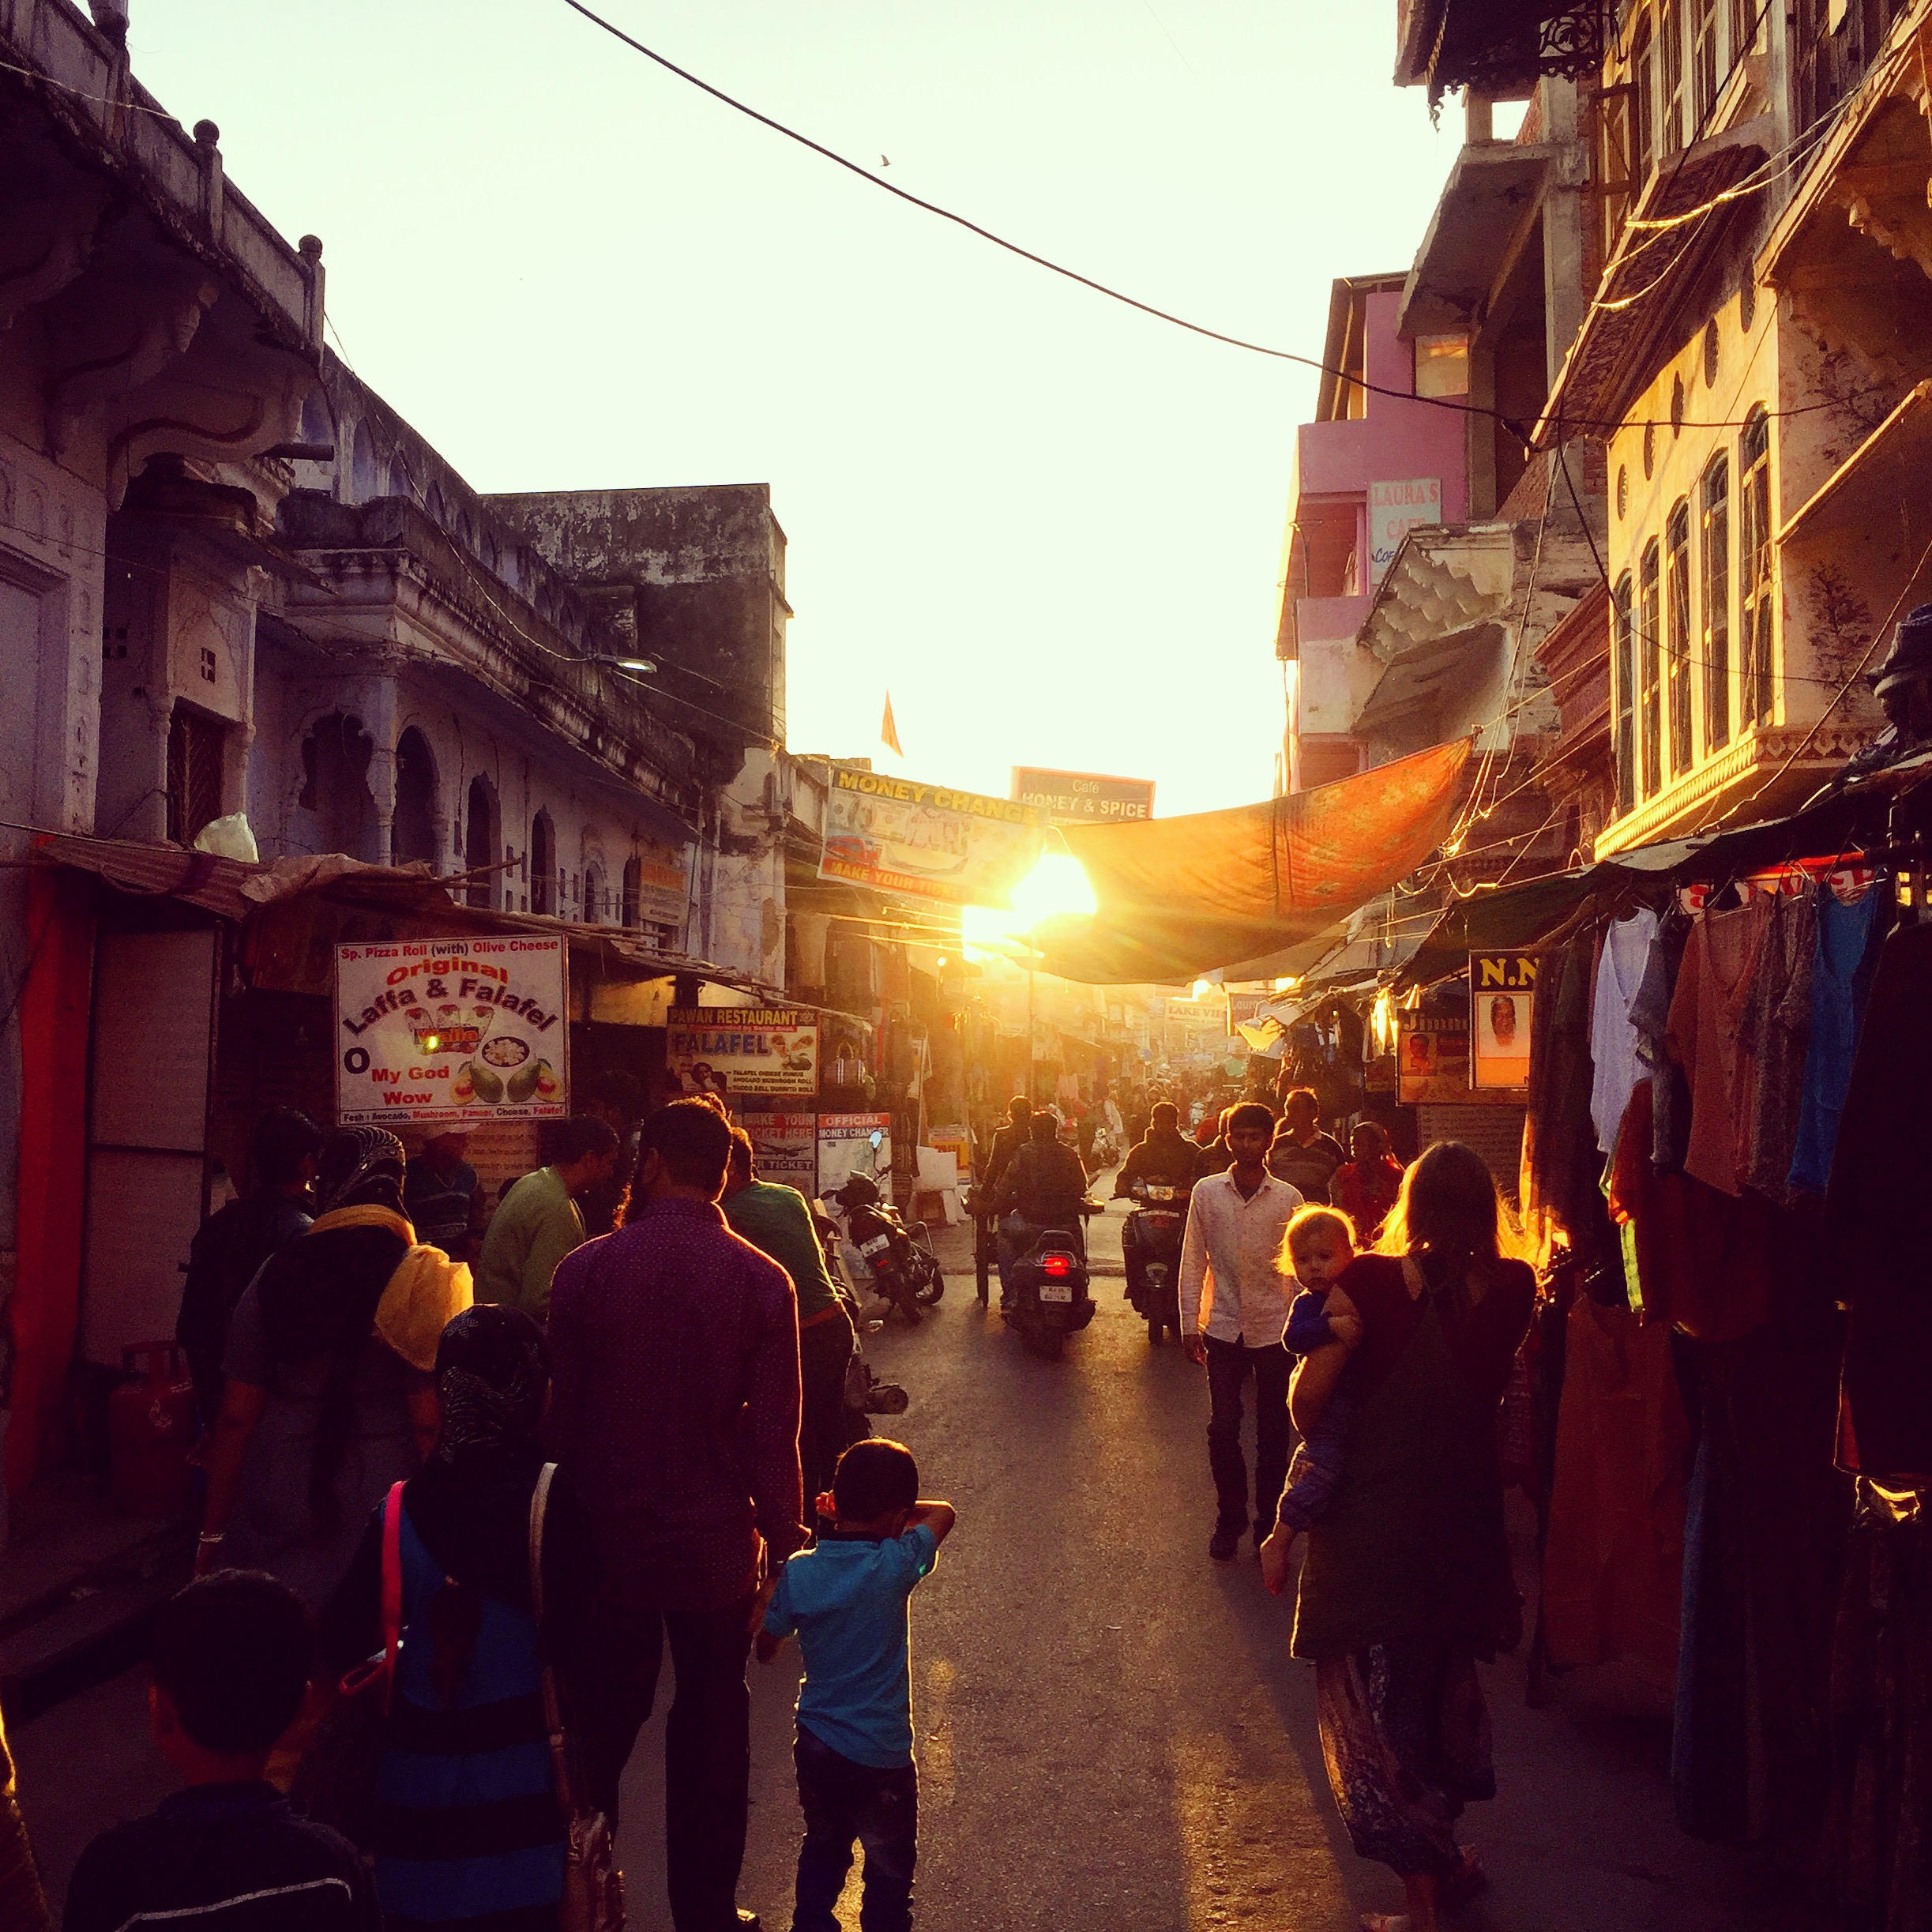 Rajastan und Pushkar erinnern an Mittelerde - wildes Land, seltsame Namen und glühende Sonnenuntergänge vor alten Gebäuden.